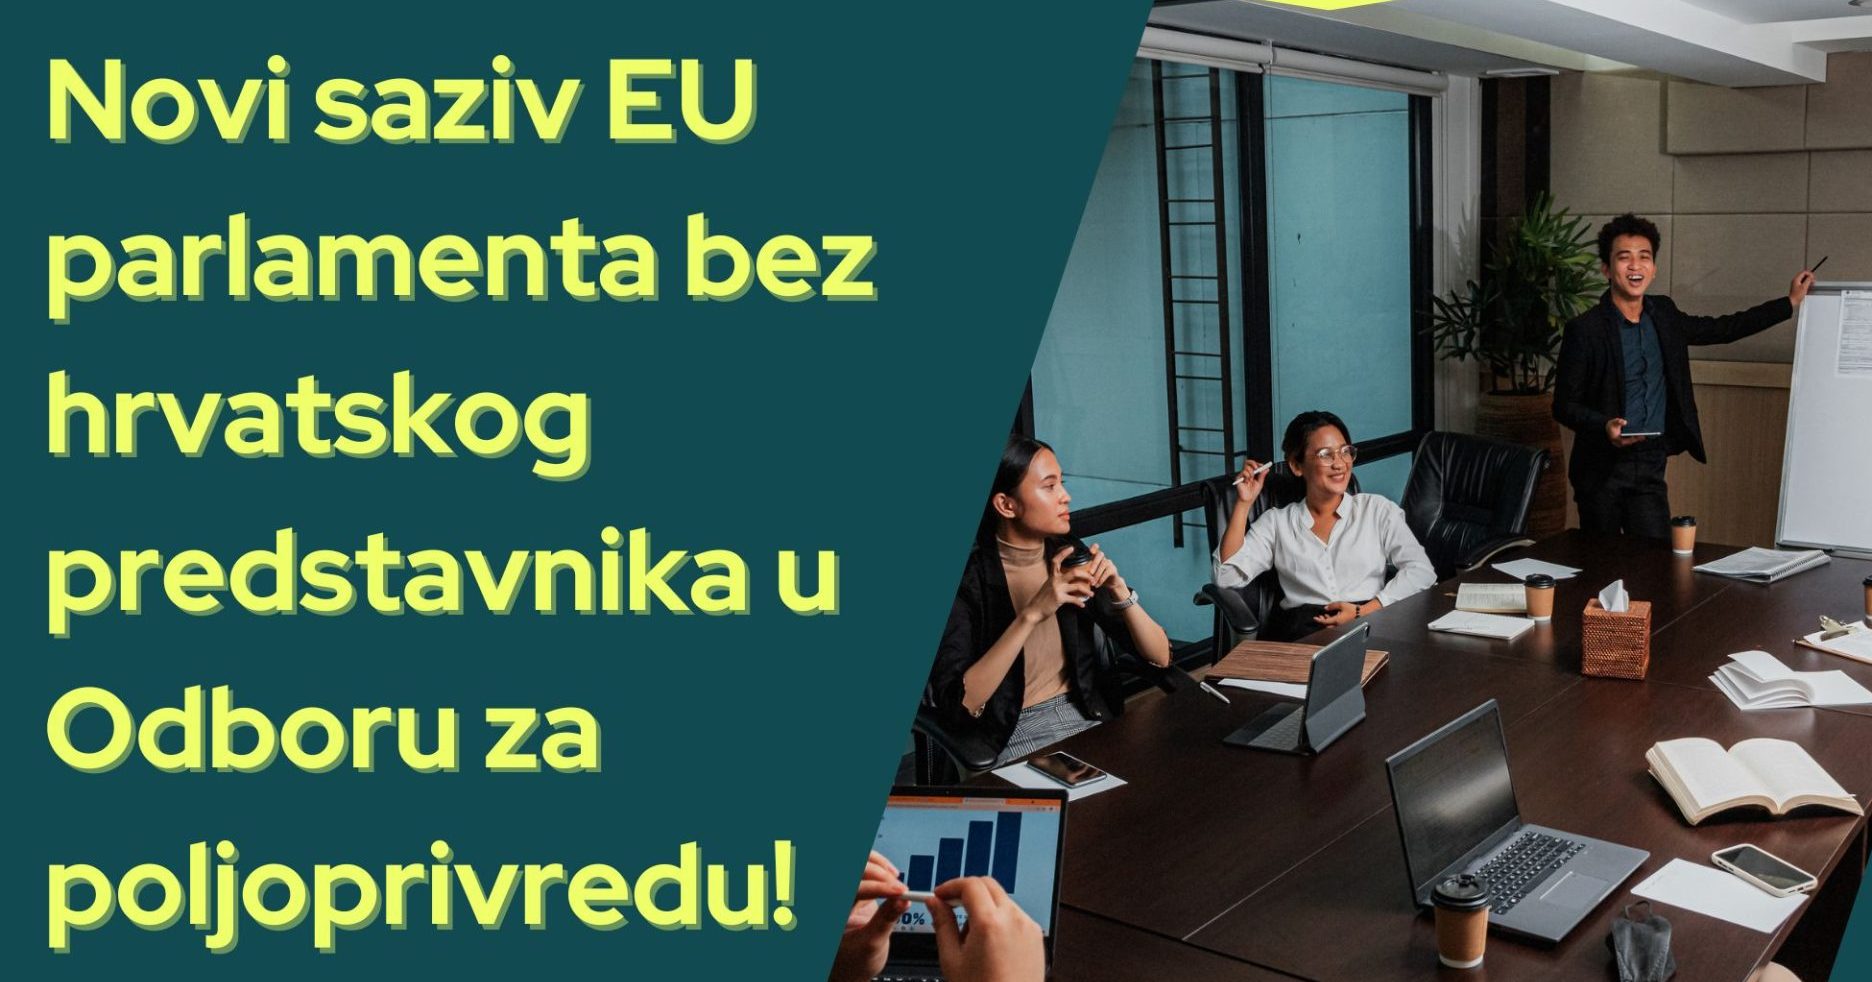 Izražavamo nezadovoljstvo što Hrvatska nema predstavnika u EU Odboru za poljoprivredu